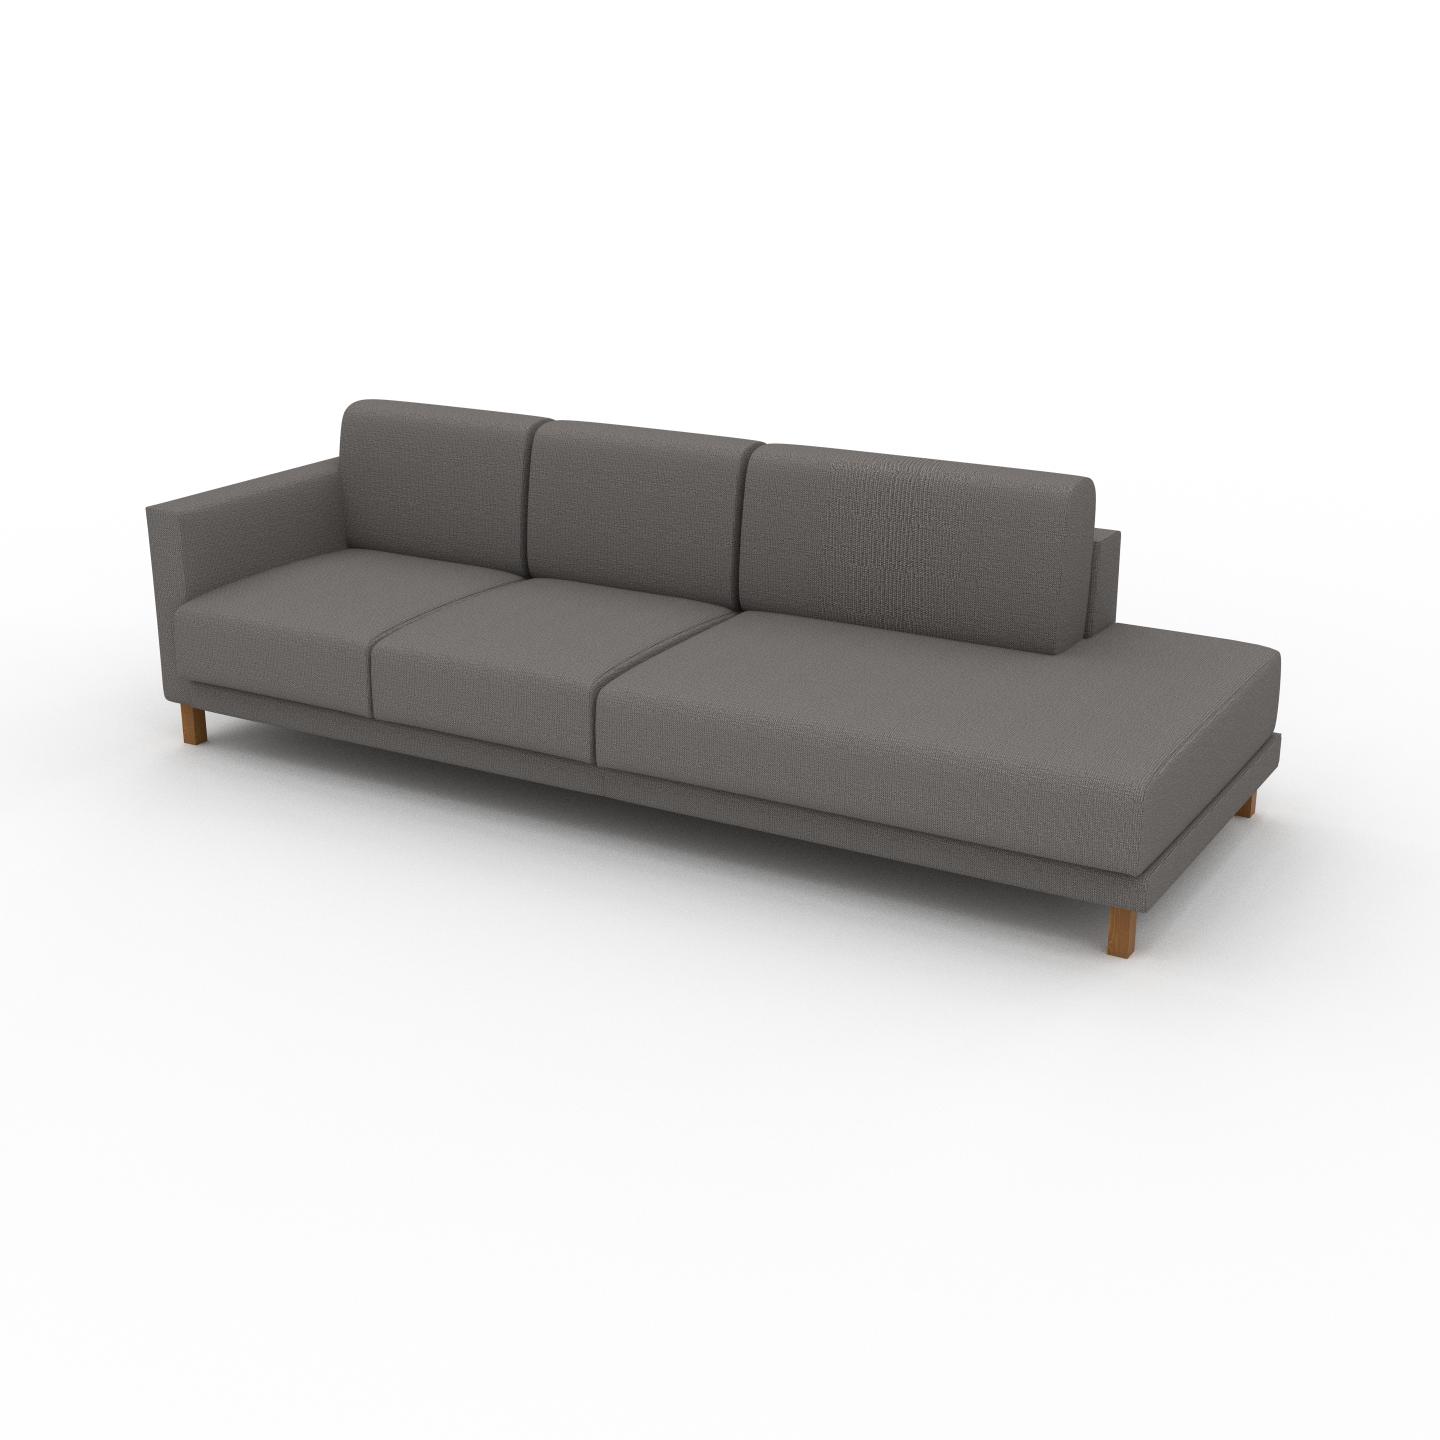 MYCS Sofa Taupegrau - Moderne Designer-Couch: Hochwertige Qualität, einzigartiges Design - 252 x 75 x 98 cm, Komplett anpassbar